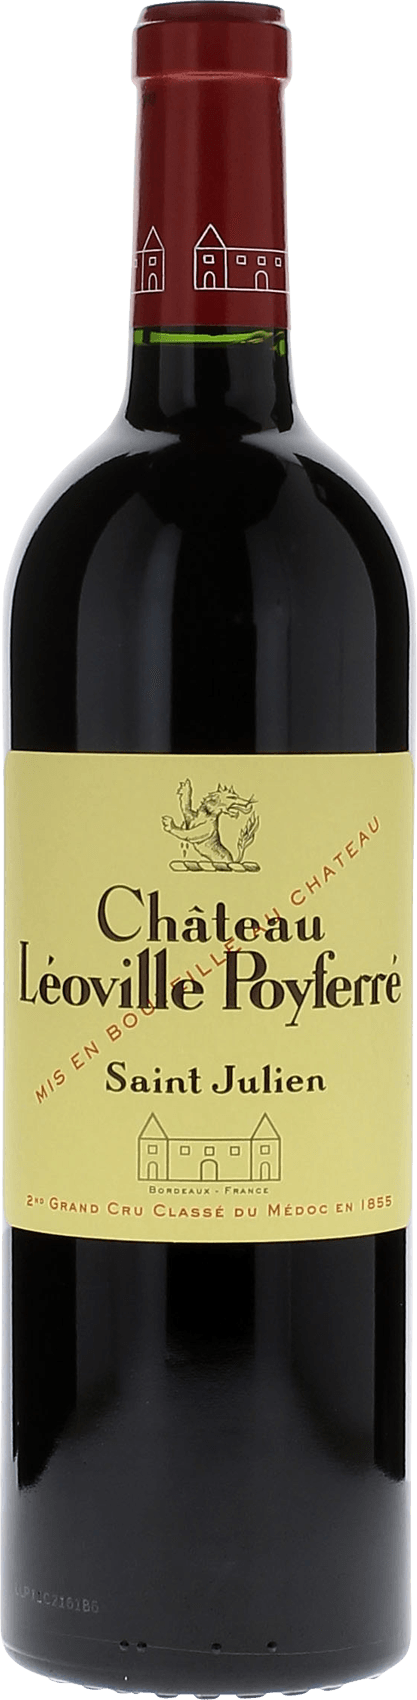 Leoville poyferre 1998 2me Grand cru class Saint-Julien, Bordeaux rouge